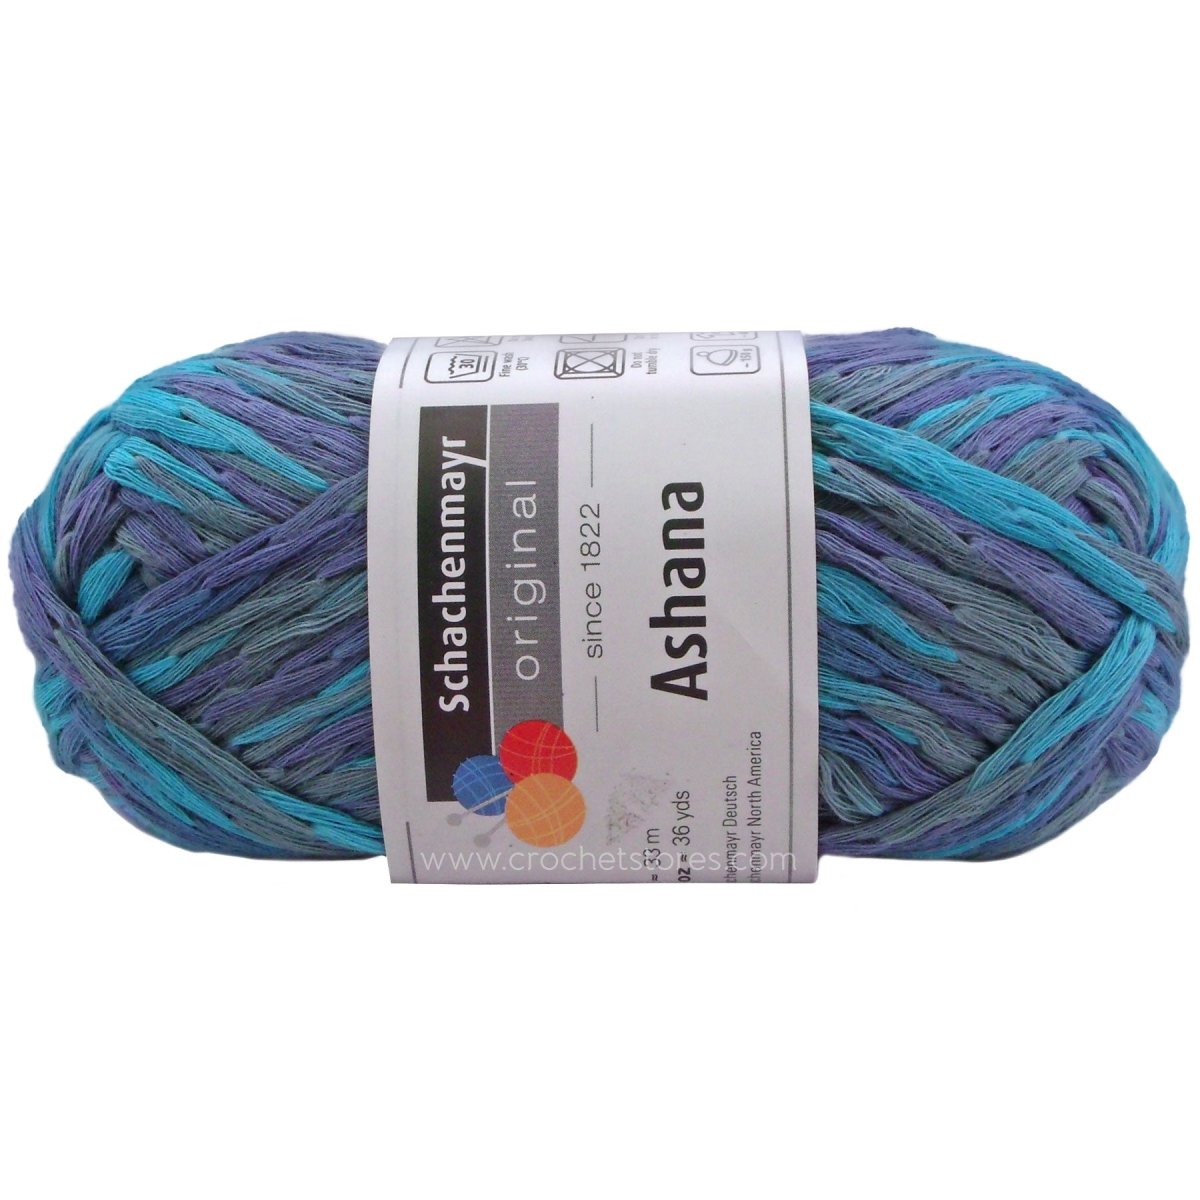 ASHANA - Crochetstores9807334-86